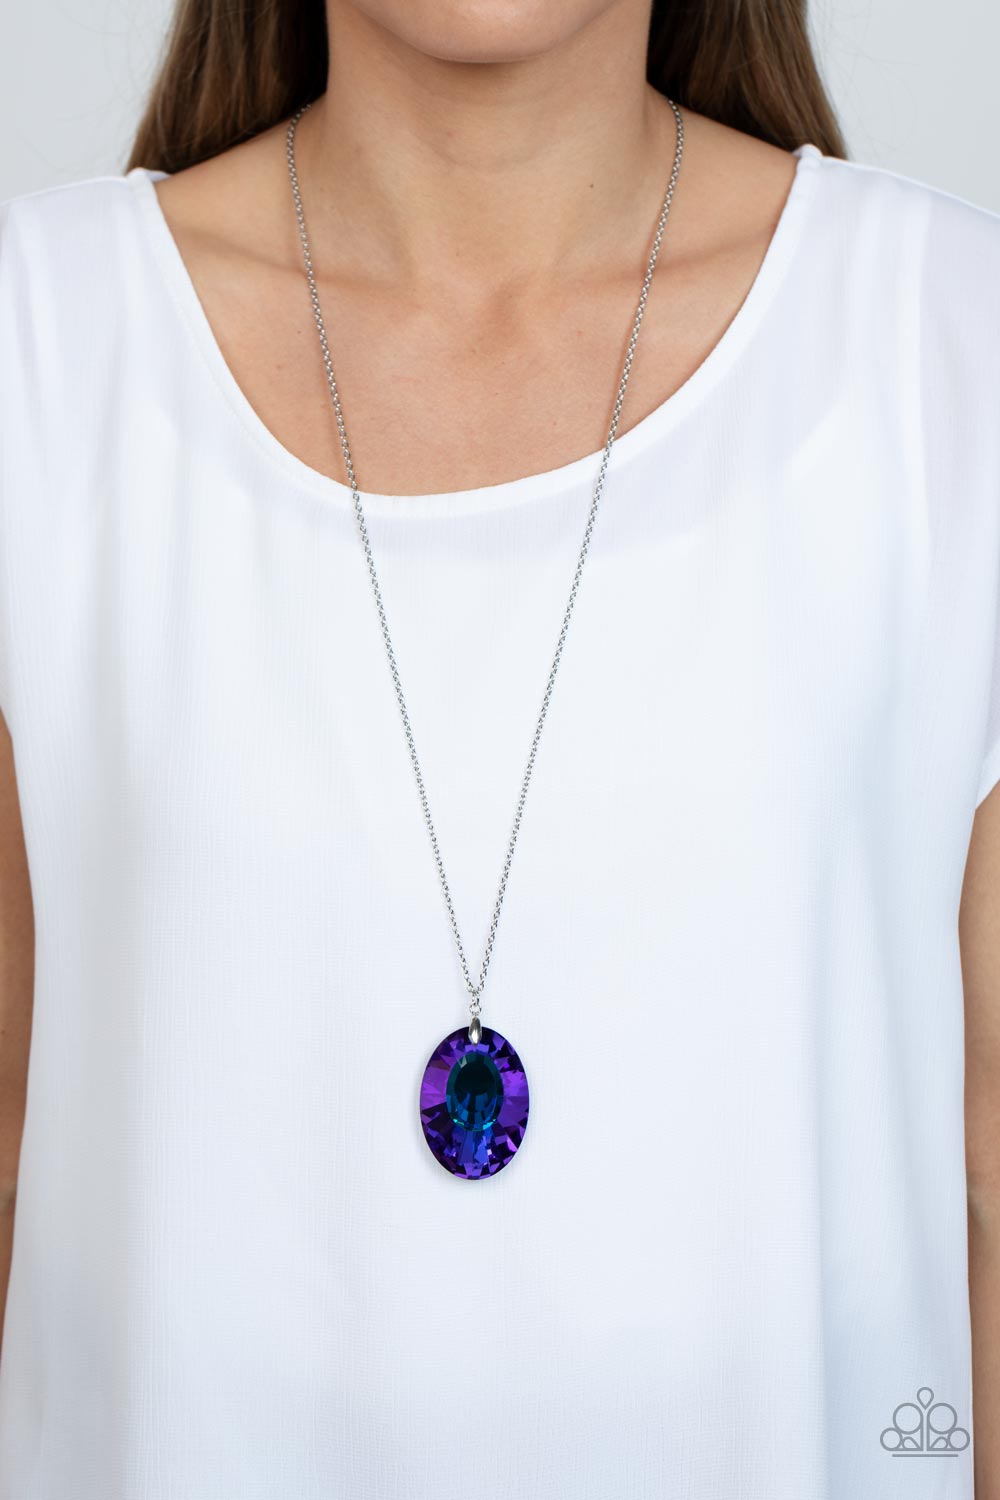 Celestial Essence Necklace (Multi , Purple, Blue)